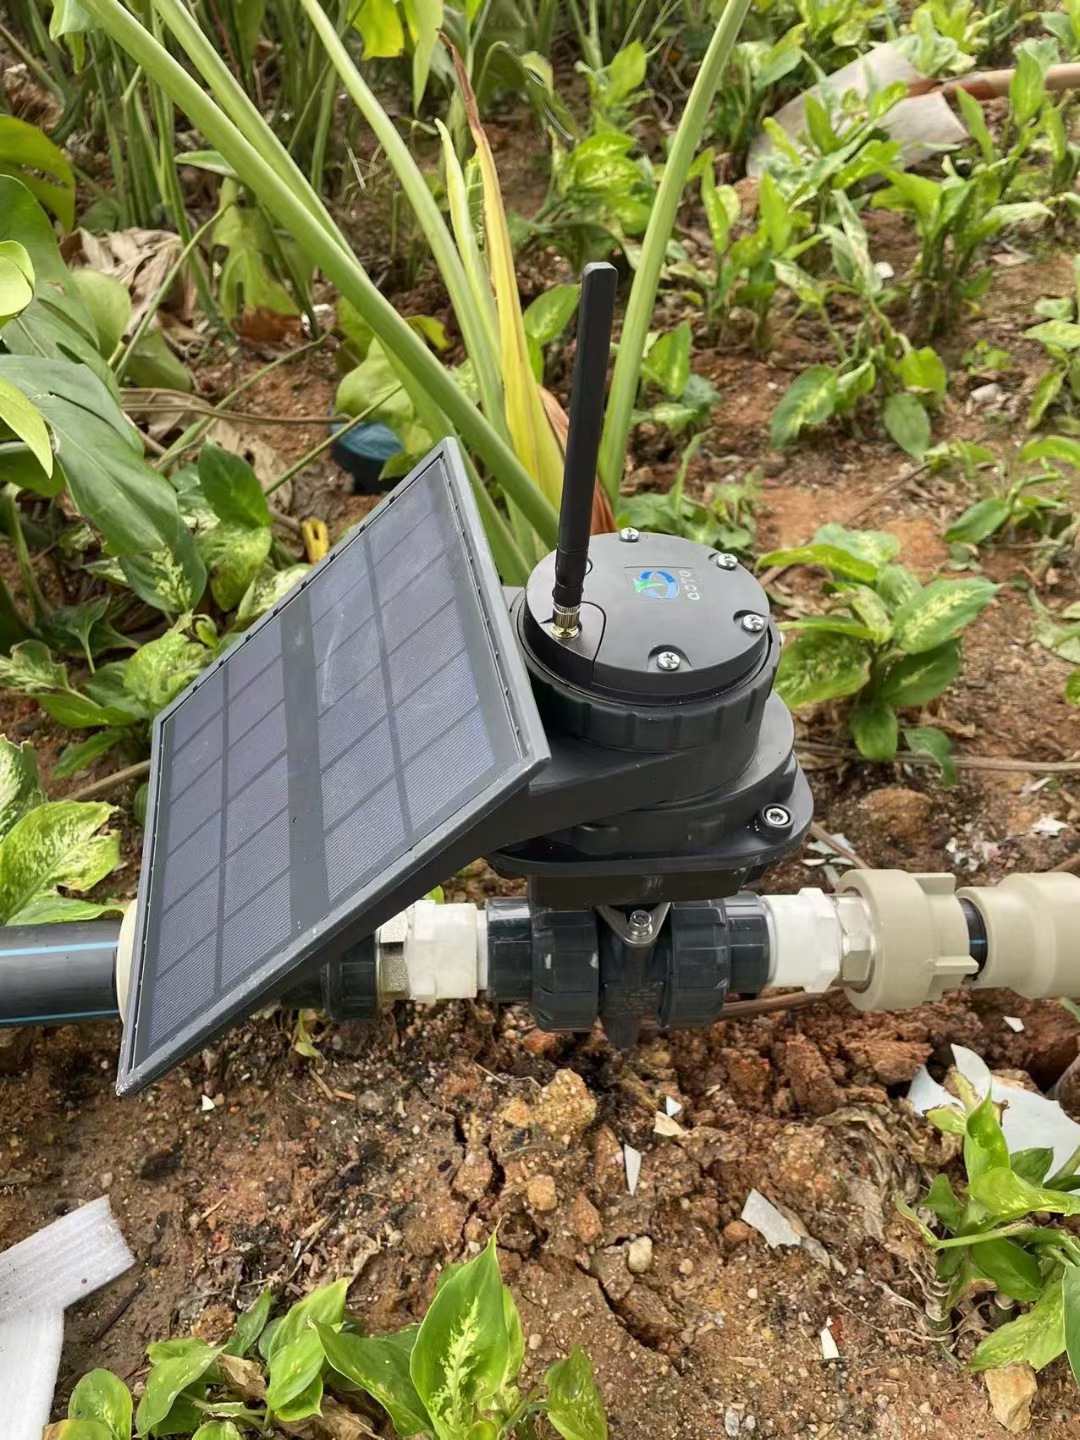 Irrigação por gotejamento inteligente IoT/LoRa/4G usando energia solar